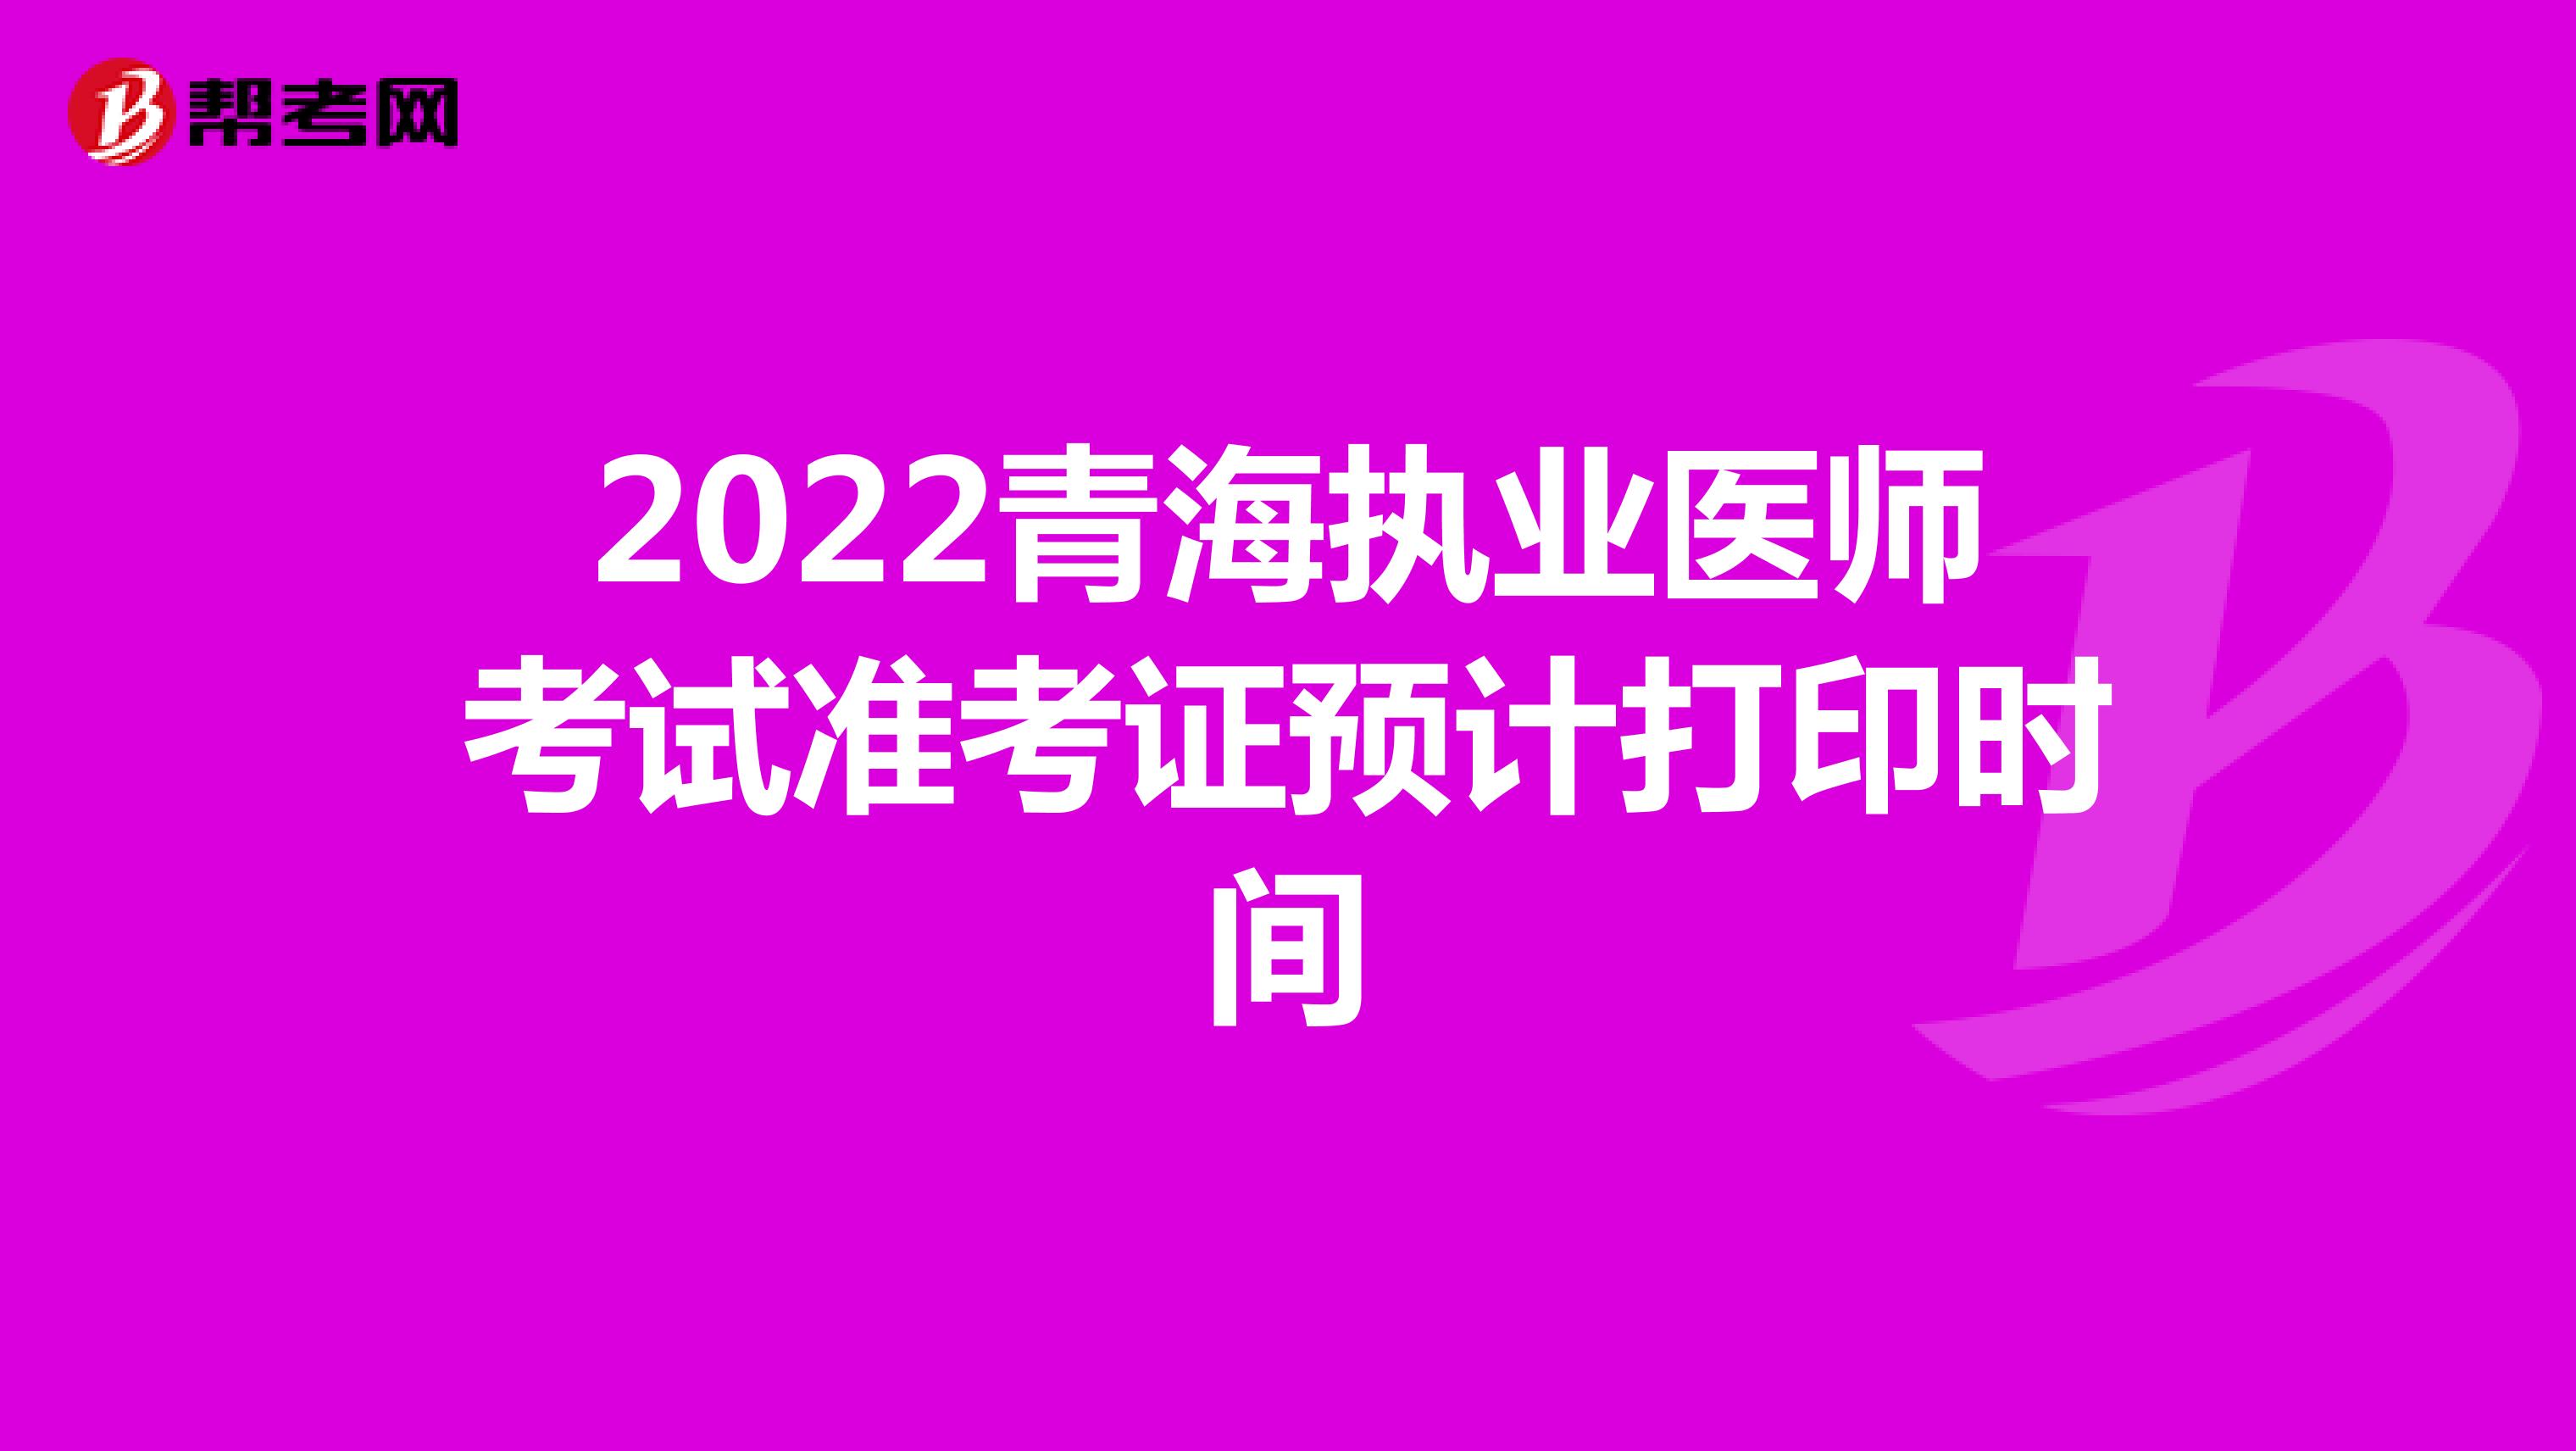 2022青海执业医师考试准考证预计打印时间